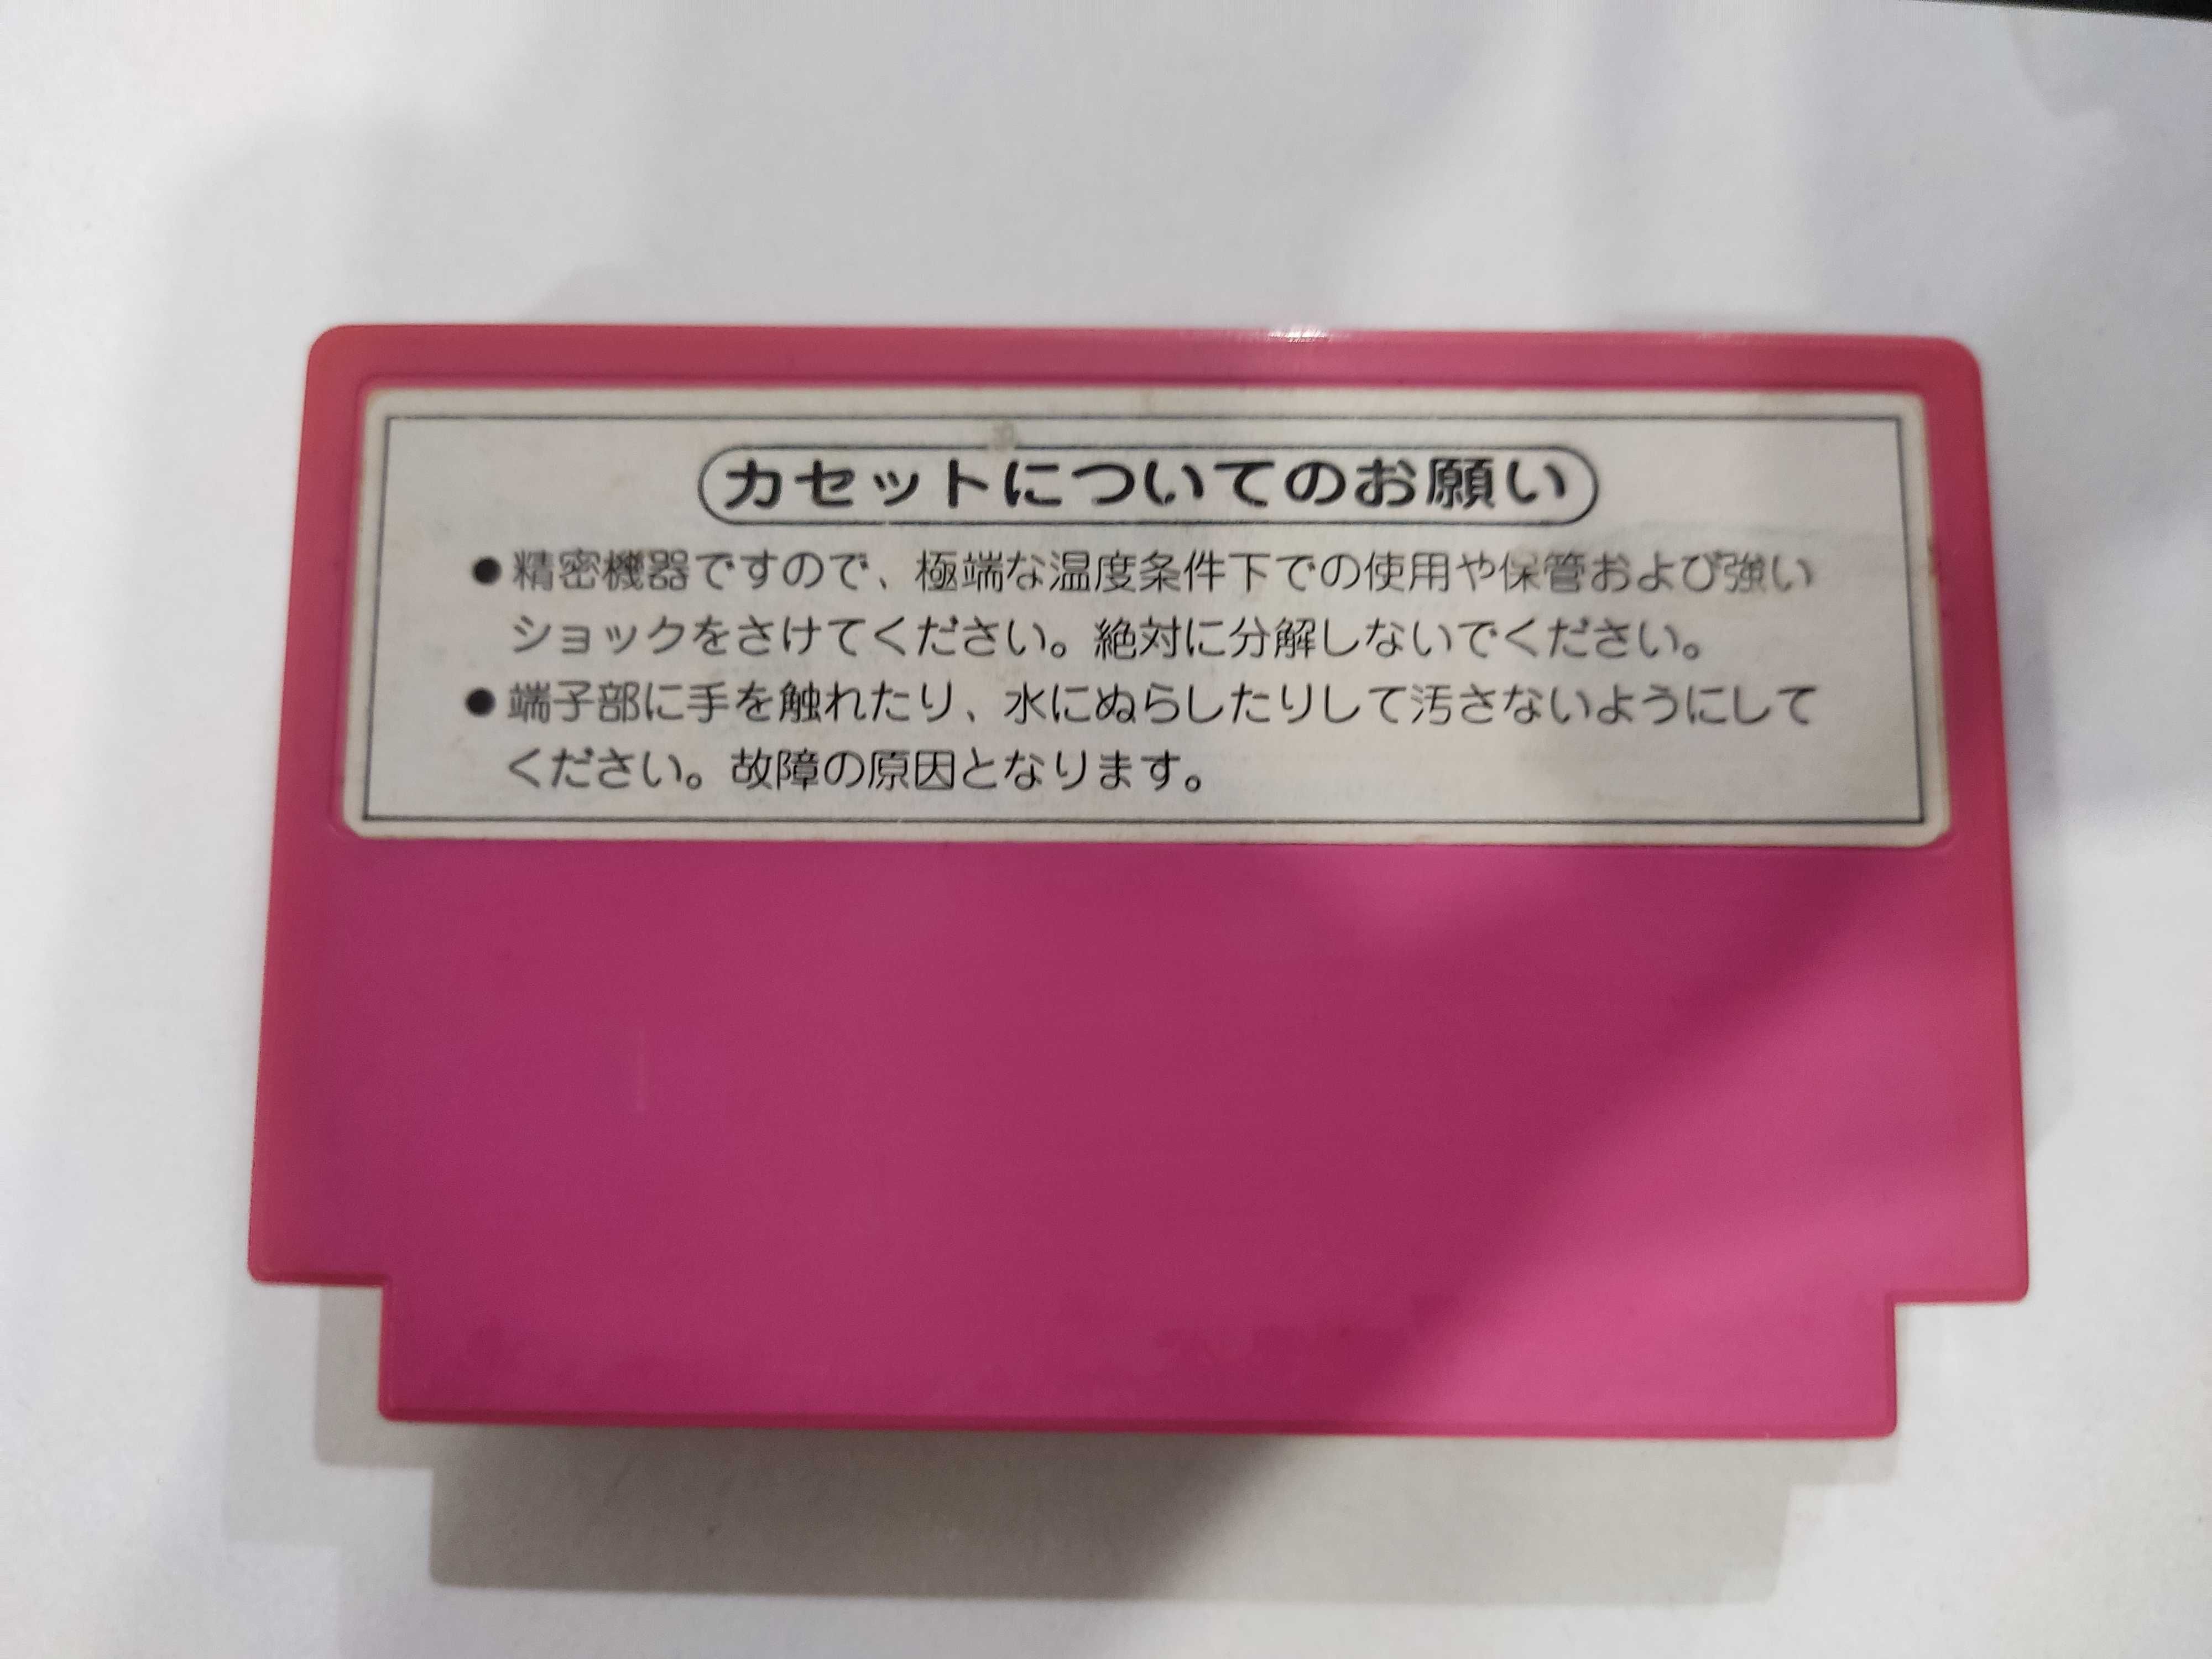 Athena Famicom, Nes, Pegasus